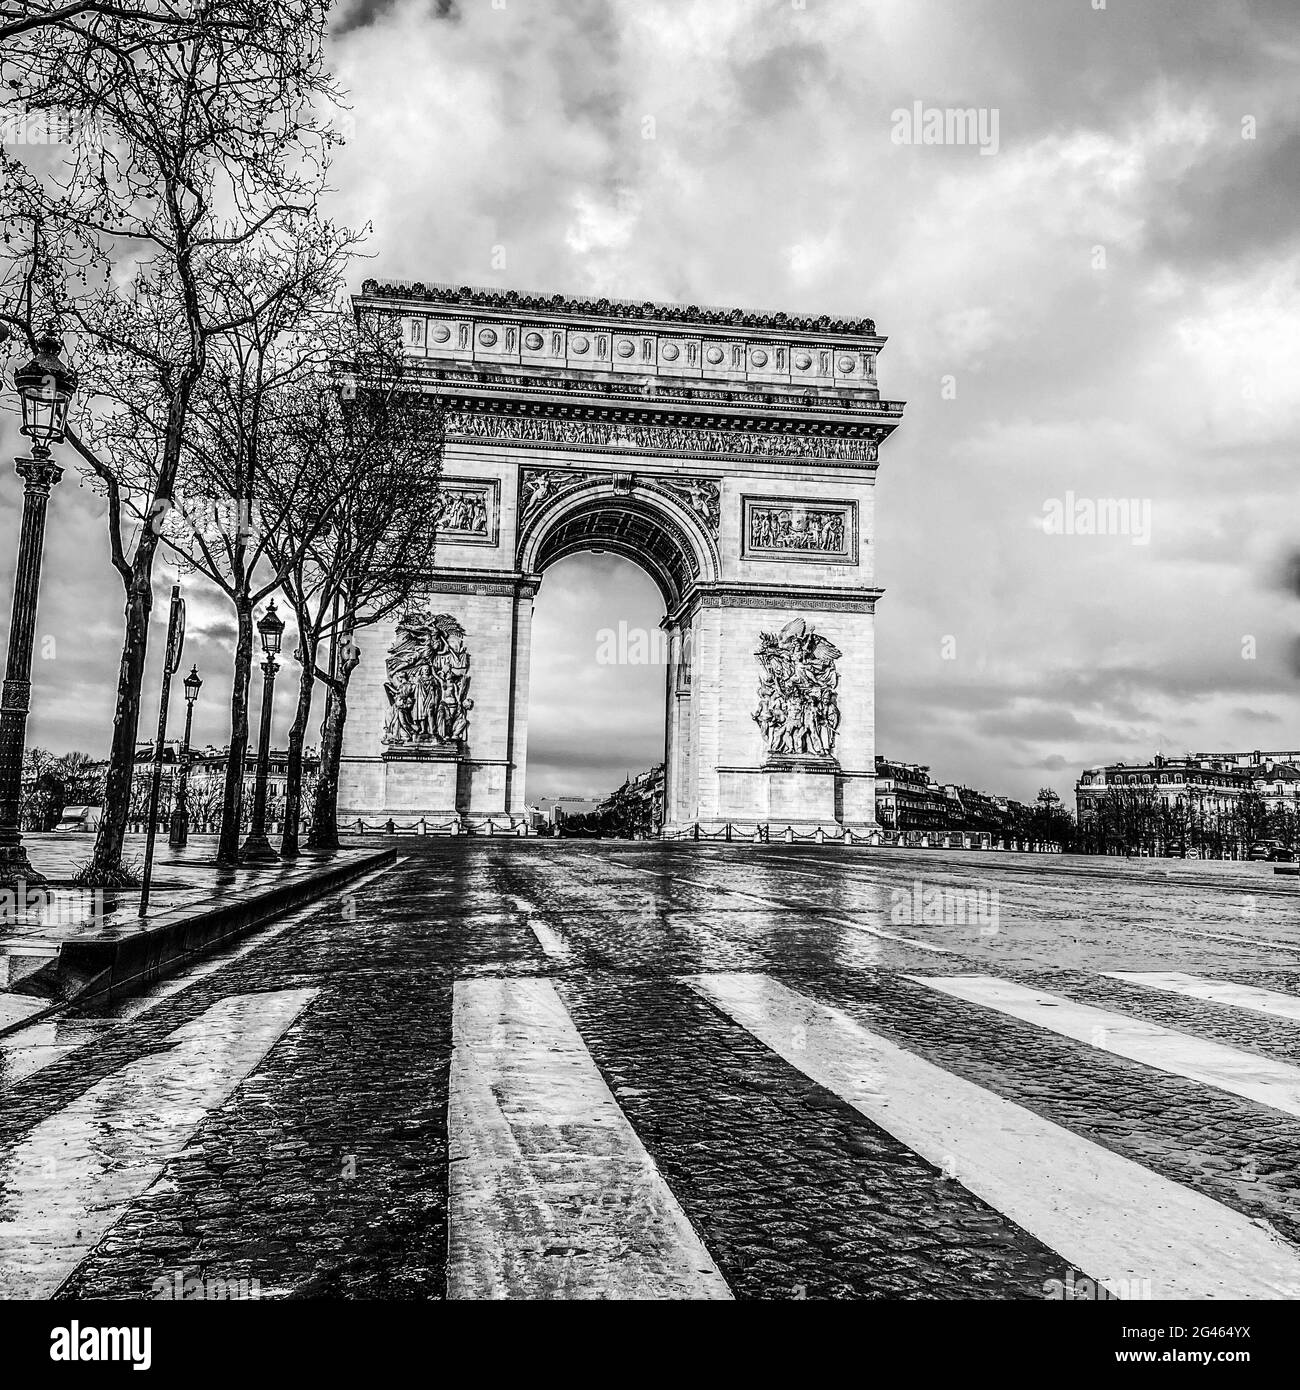 Noir et blanc, Paris, arc de triomphe pendant une journée nuageux Banque D'Images